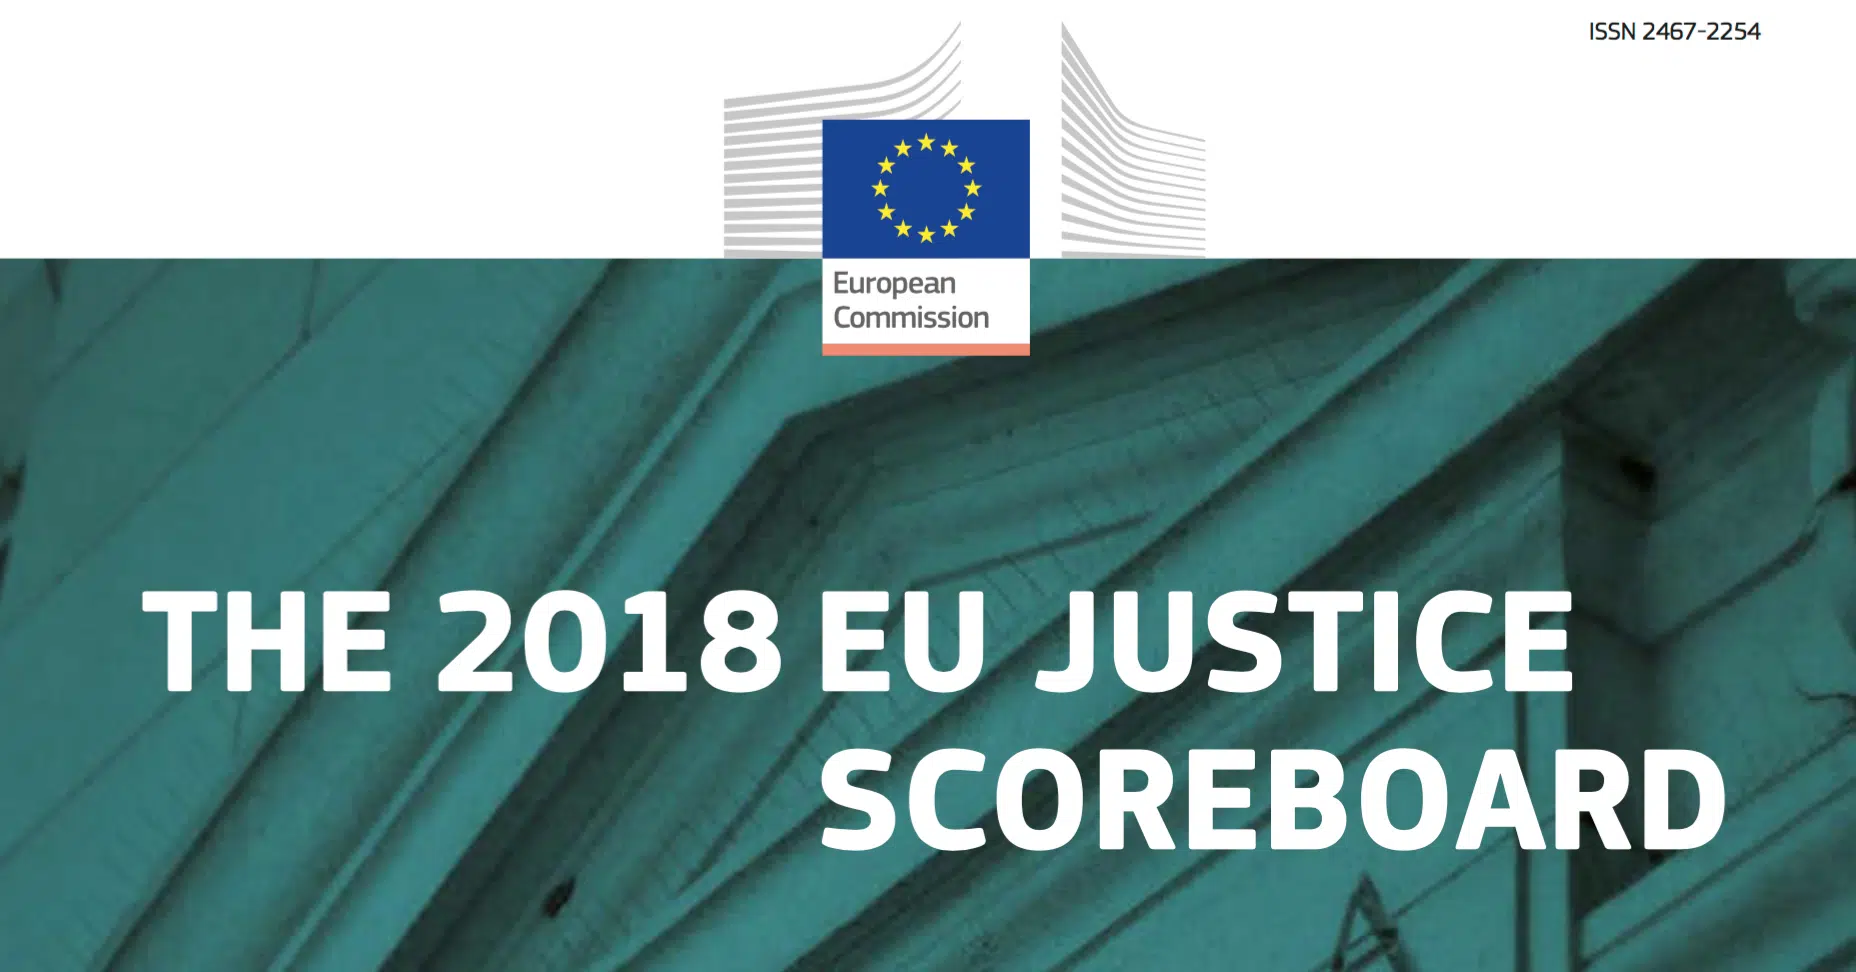 España está en la media de la UE de los sistemas judiciales, según la edición del Marcador de Justicia 2018